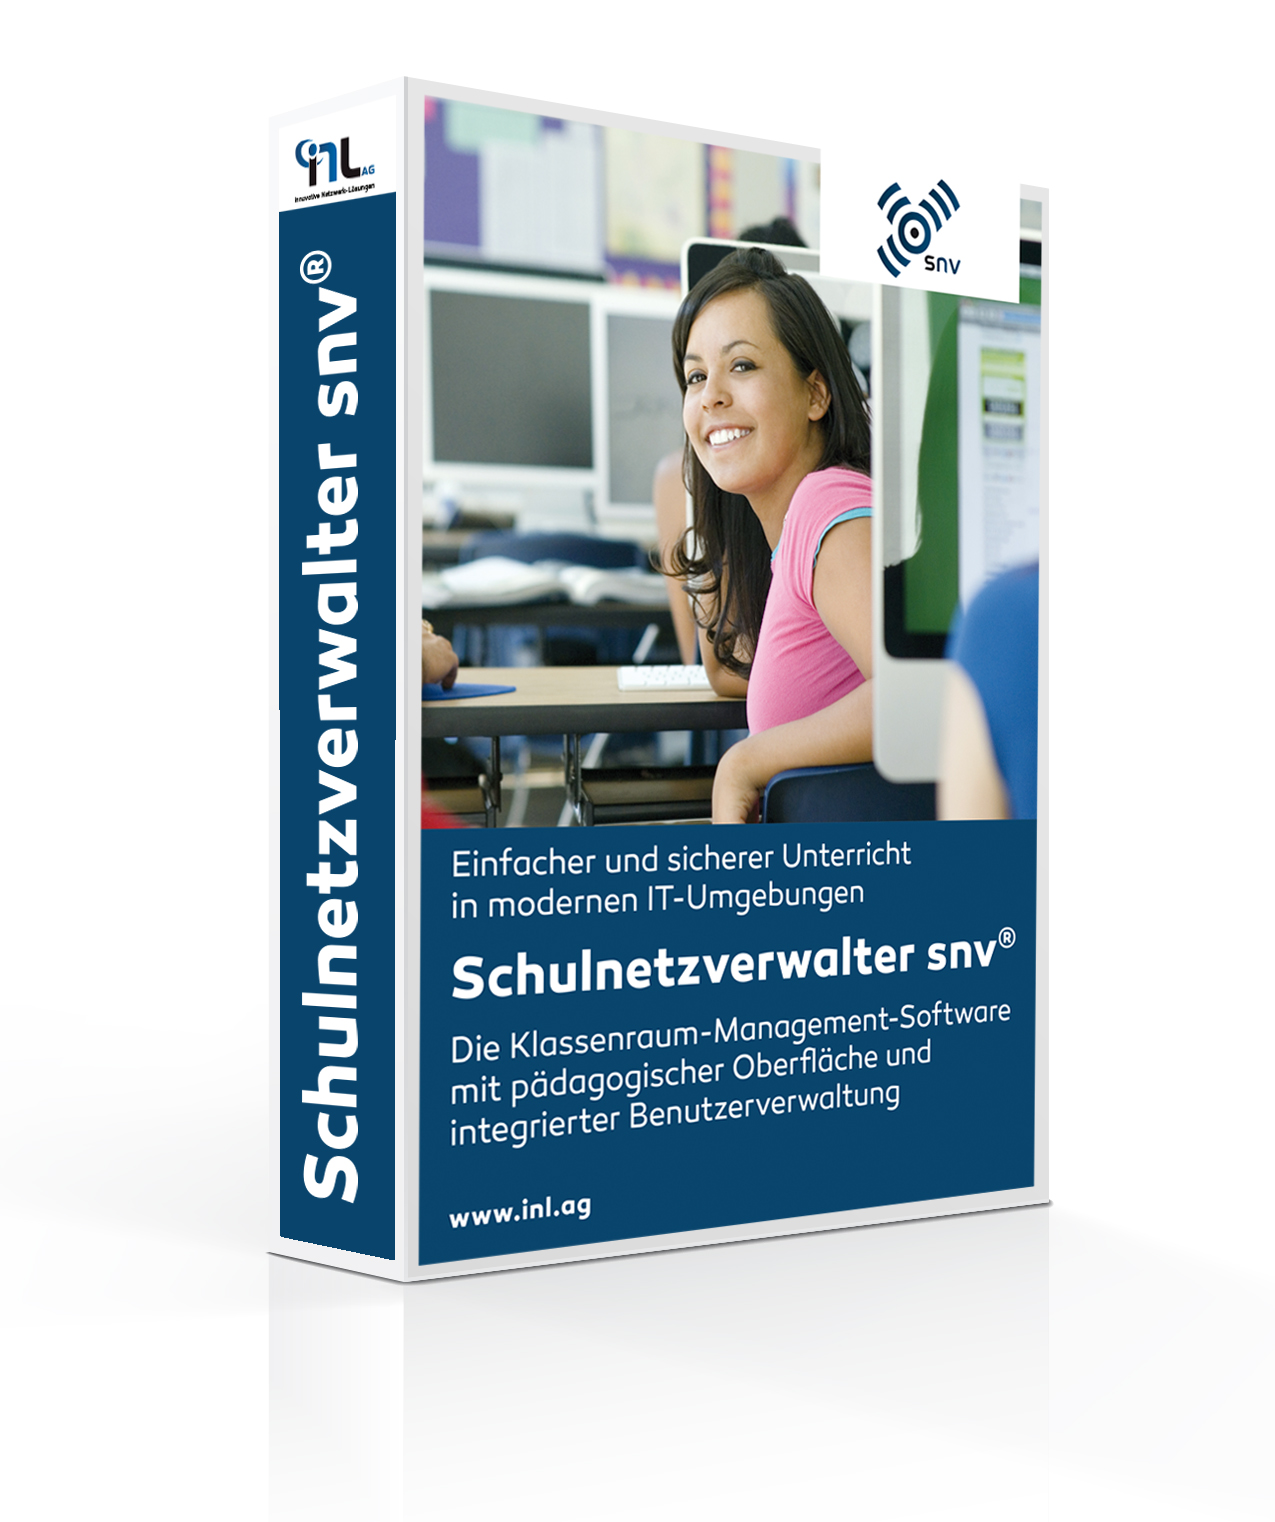 Schulnetzverwalter 3.0 snv® Education